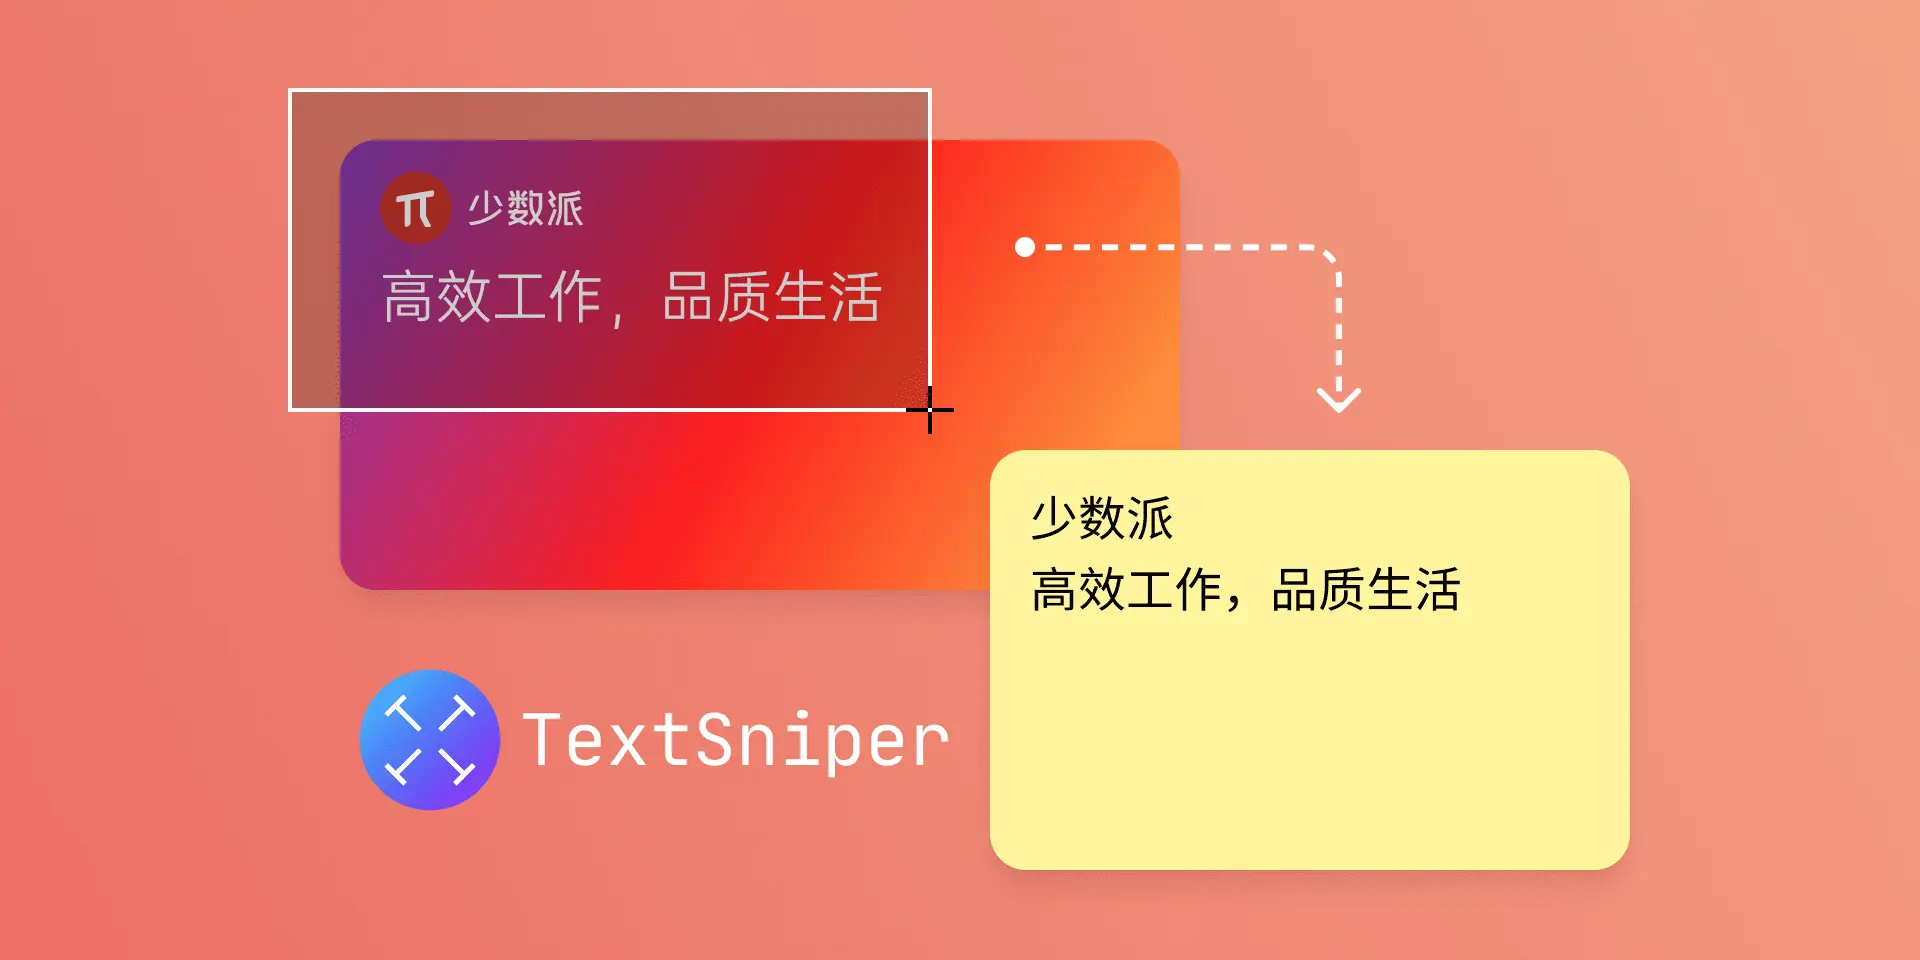 在 macOS 上离线识别文字，TextSniper 能帮你做到